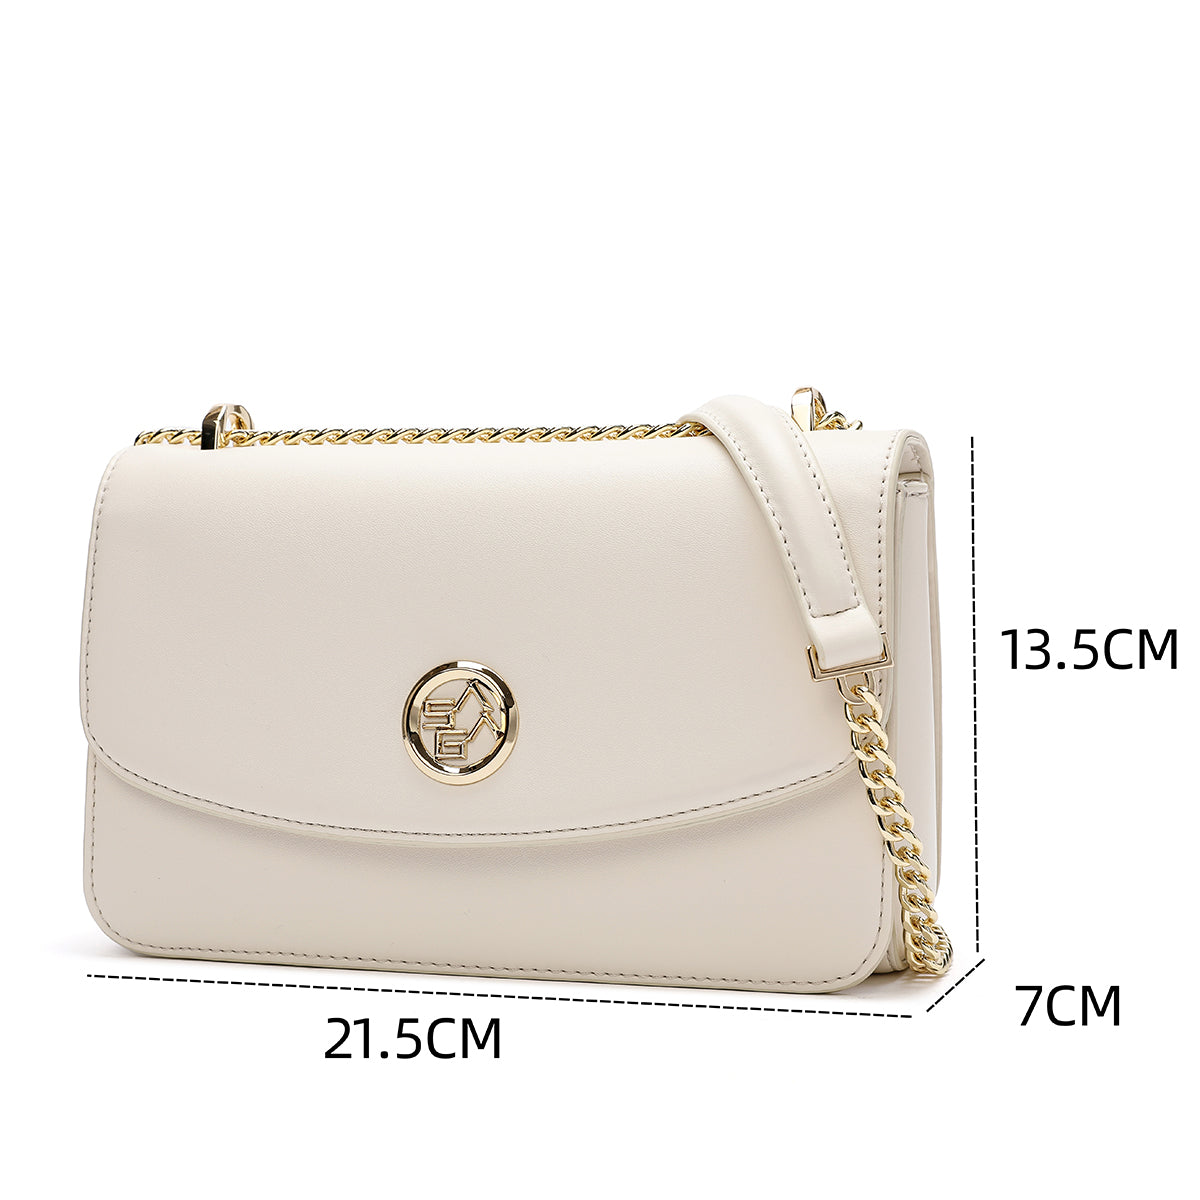 Fashionable women's handbag in brown or cream color